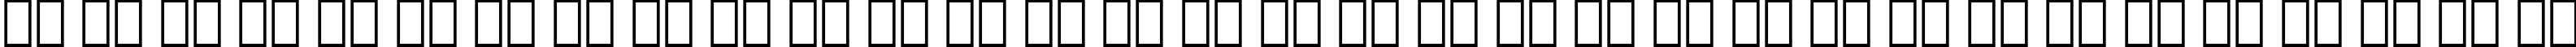 Пример написания русского алфавита шрифтом Snell BT